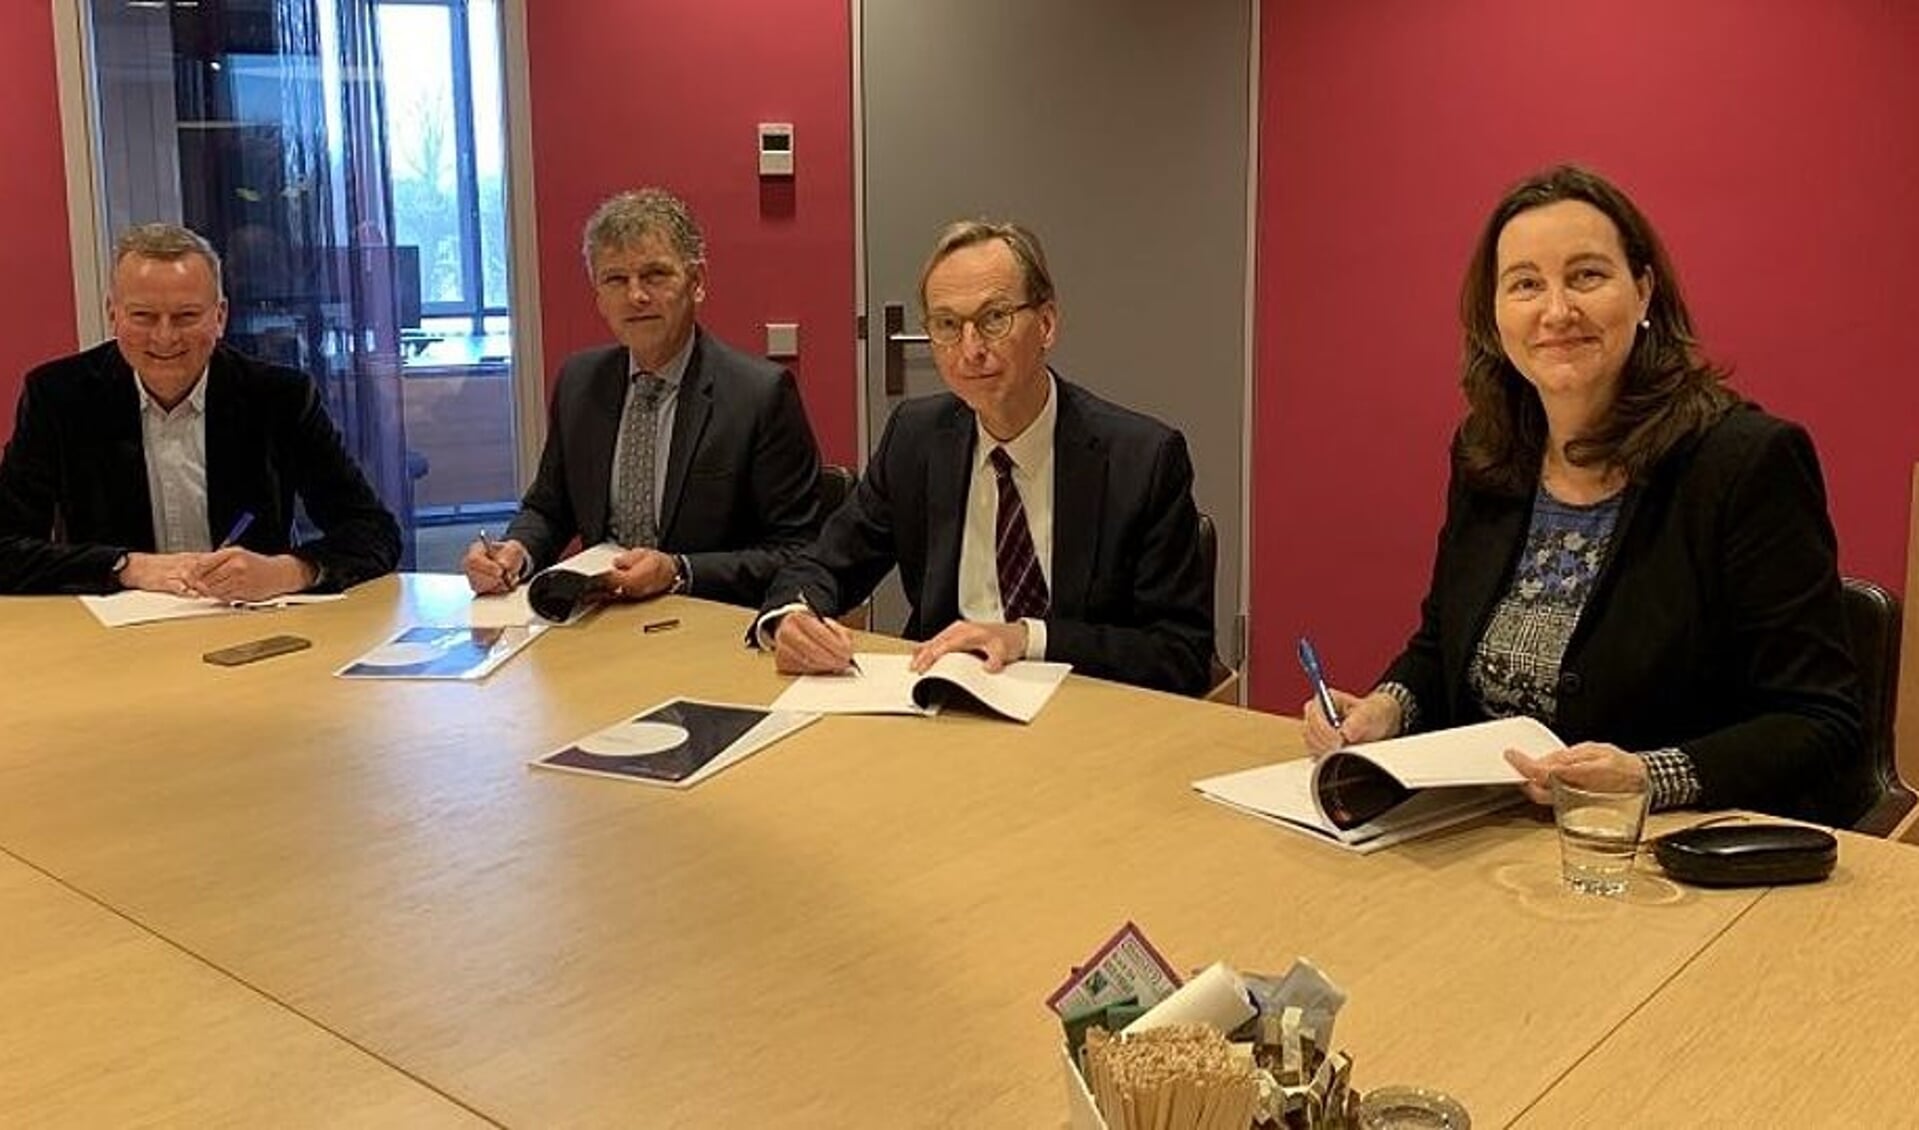 Burgemeesters Frank Dales (Velsen), Martijn Smit (Beverwijk), Gerrit Goedhart (Uitgeest) en Mieke Baltus (Heemskerk) ondertekenen de samenwerkingsovereenkomst Meld Misdaad Anoniem.